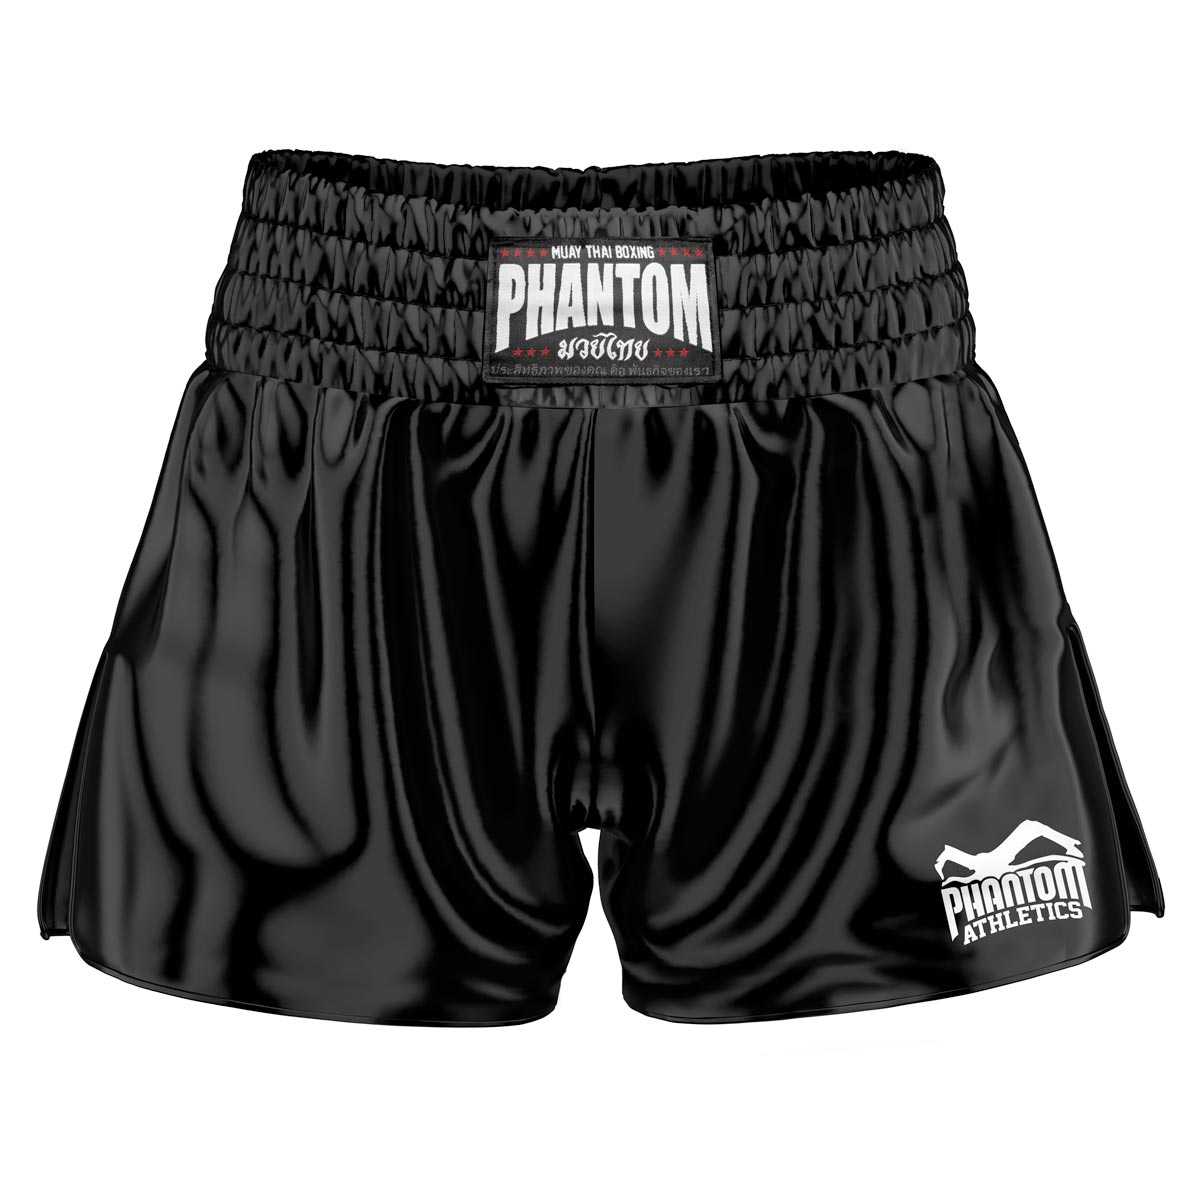 El equipo Phantom Muay Thai Shorts en color negro. La tela satinada de la vieja escuela te da una sensación original de Tailandia. Con la calidad habitual Phantom Athletics . Ideal para tu entrenamiento y competición de boxeo tailandés.